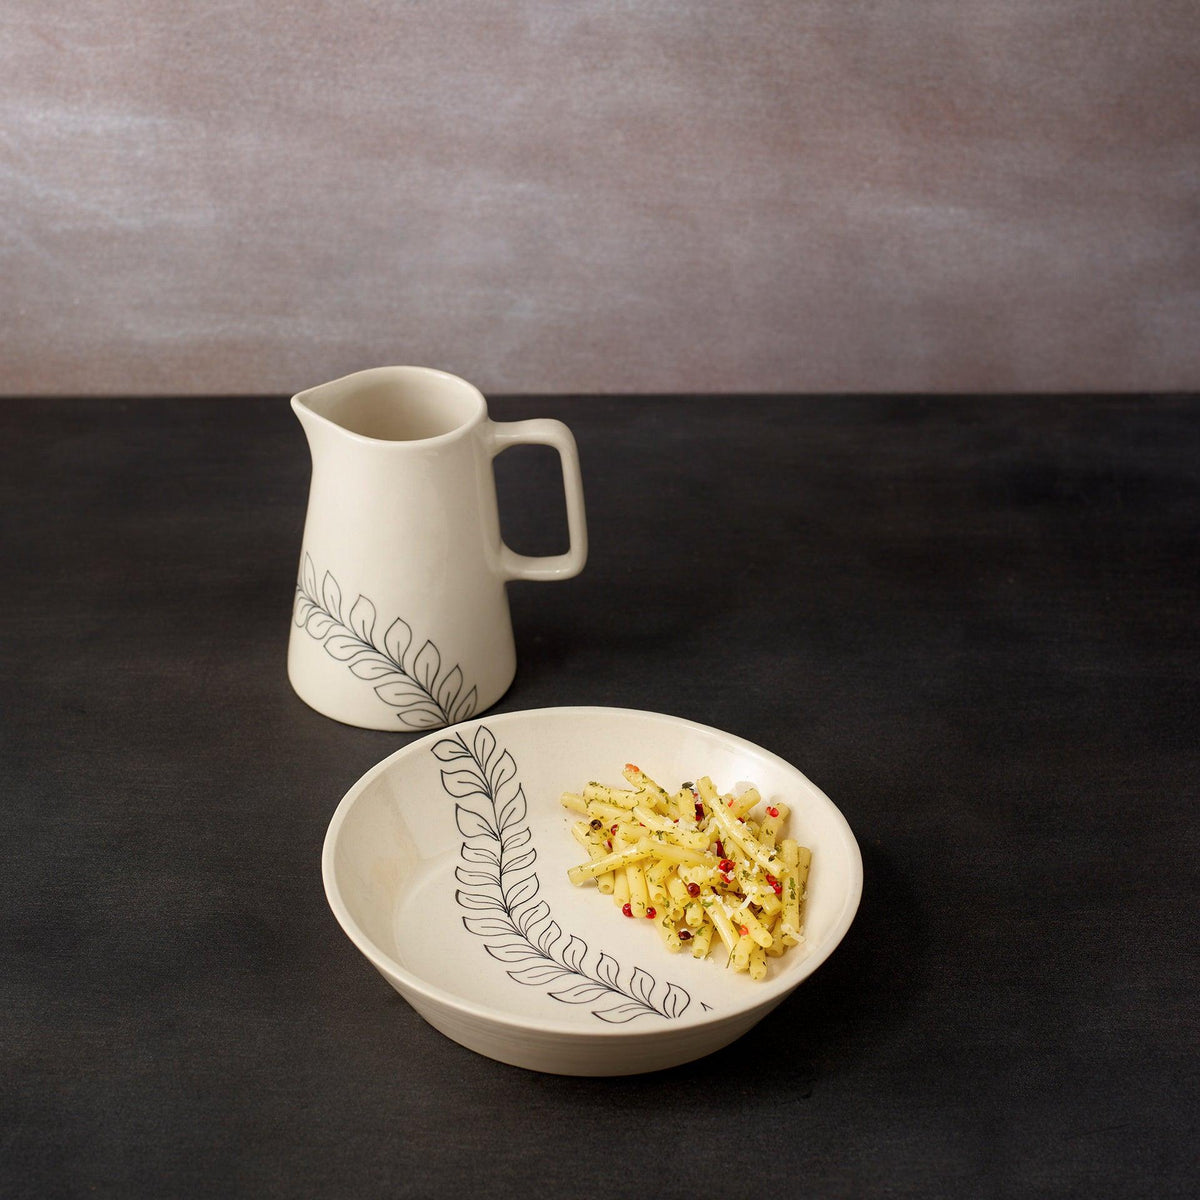 linea ceramic pasta bowl - ellementry